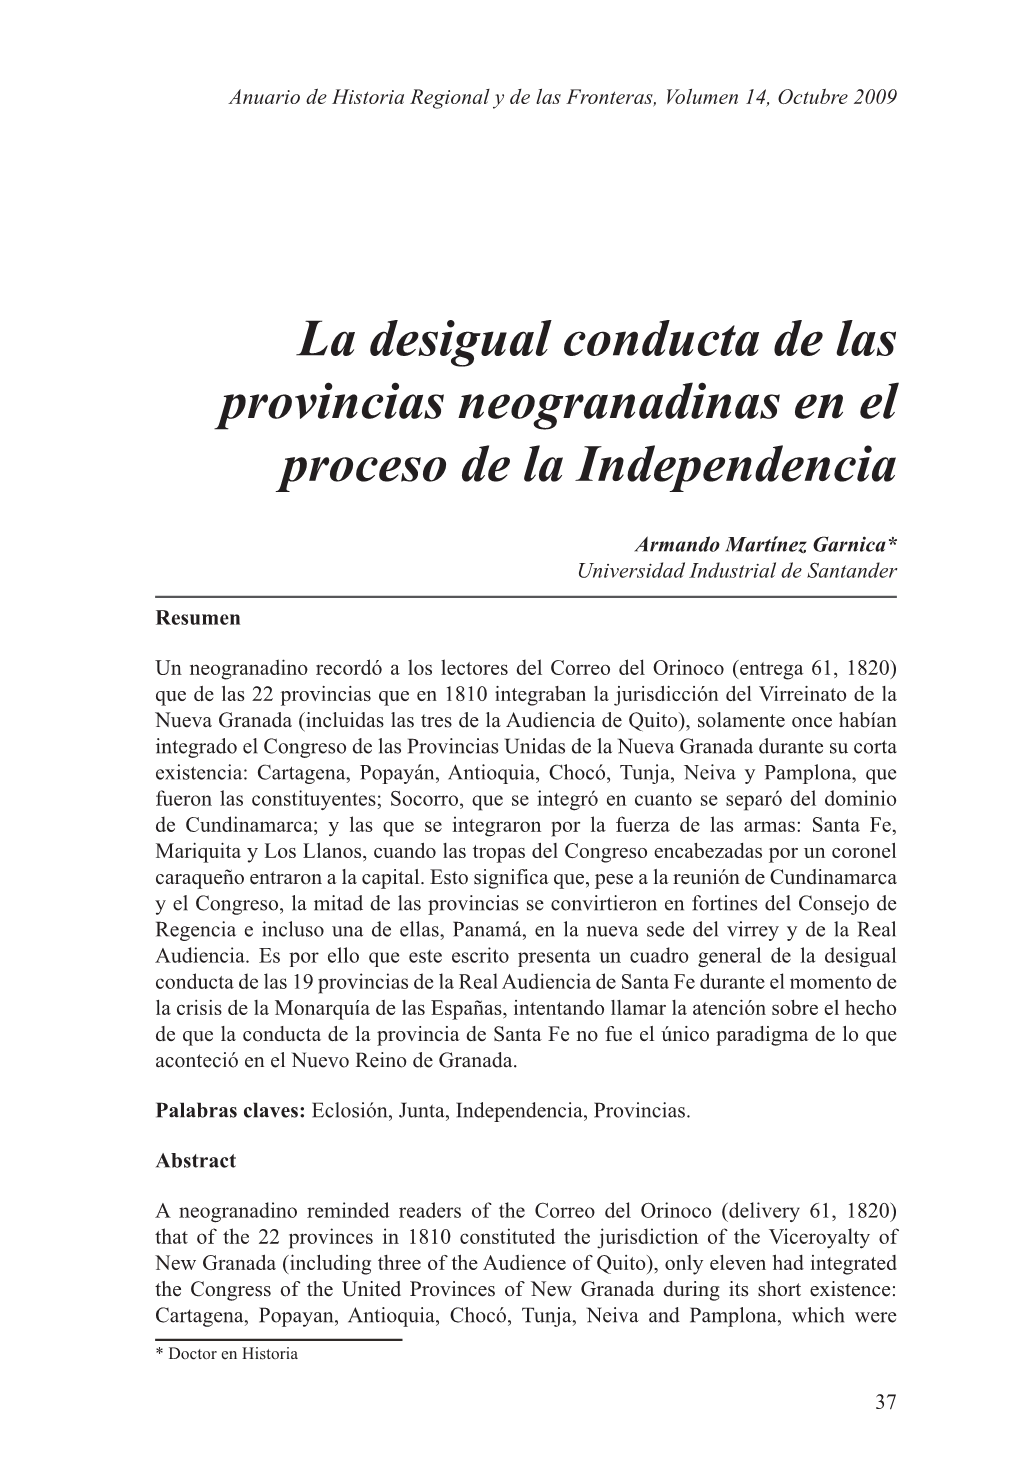 La Desigual Conducta De Las Provincias Neogranadinas En El Proceso De La Independencia